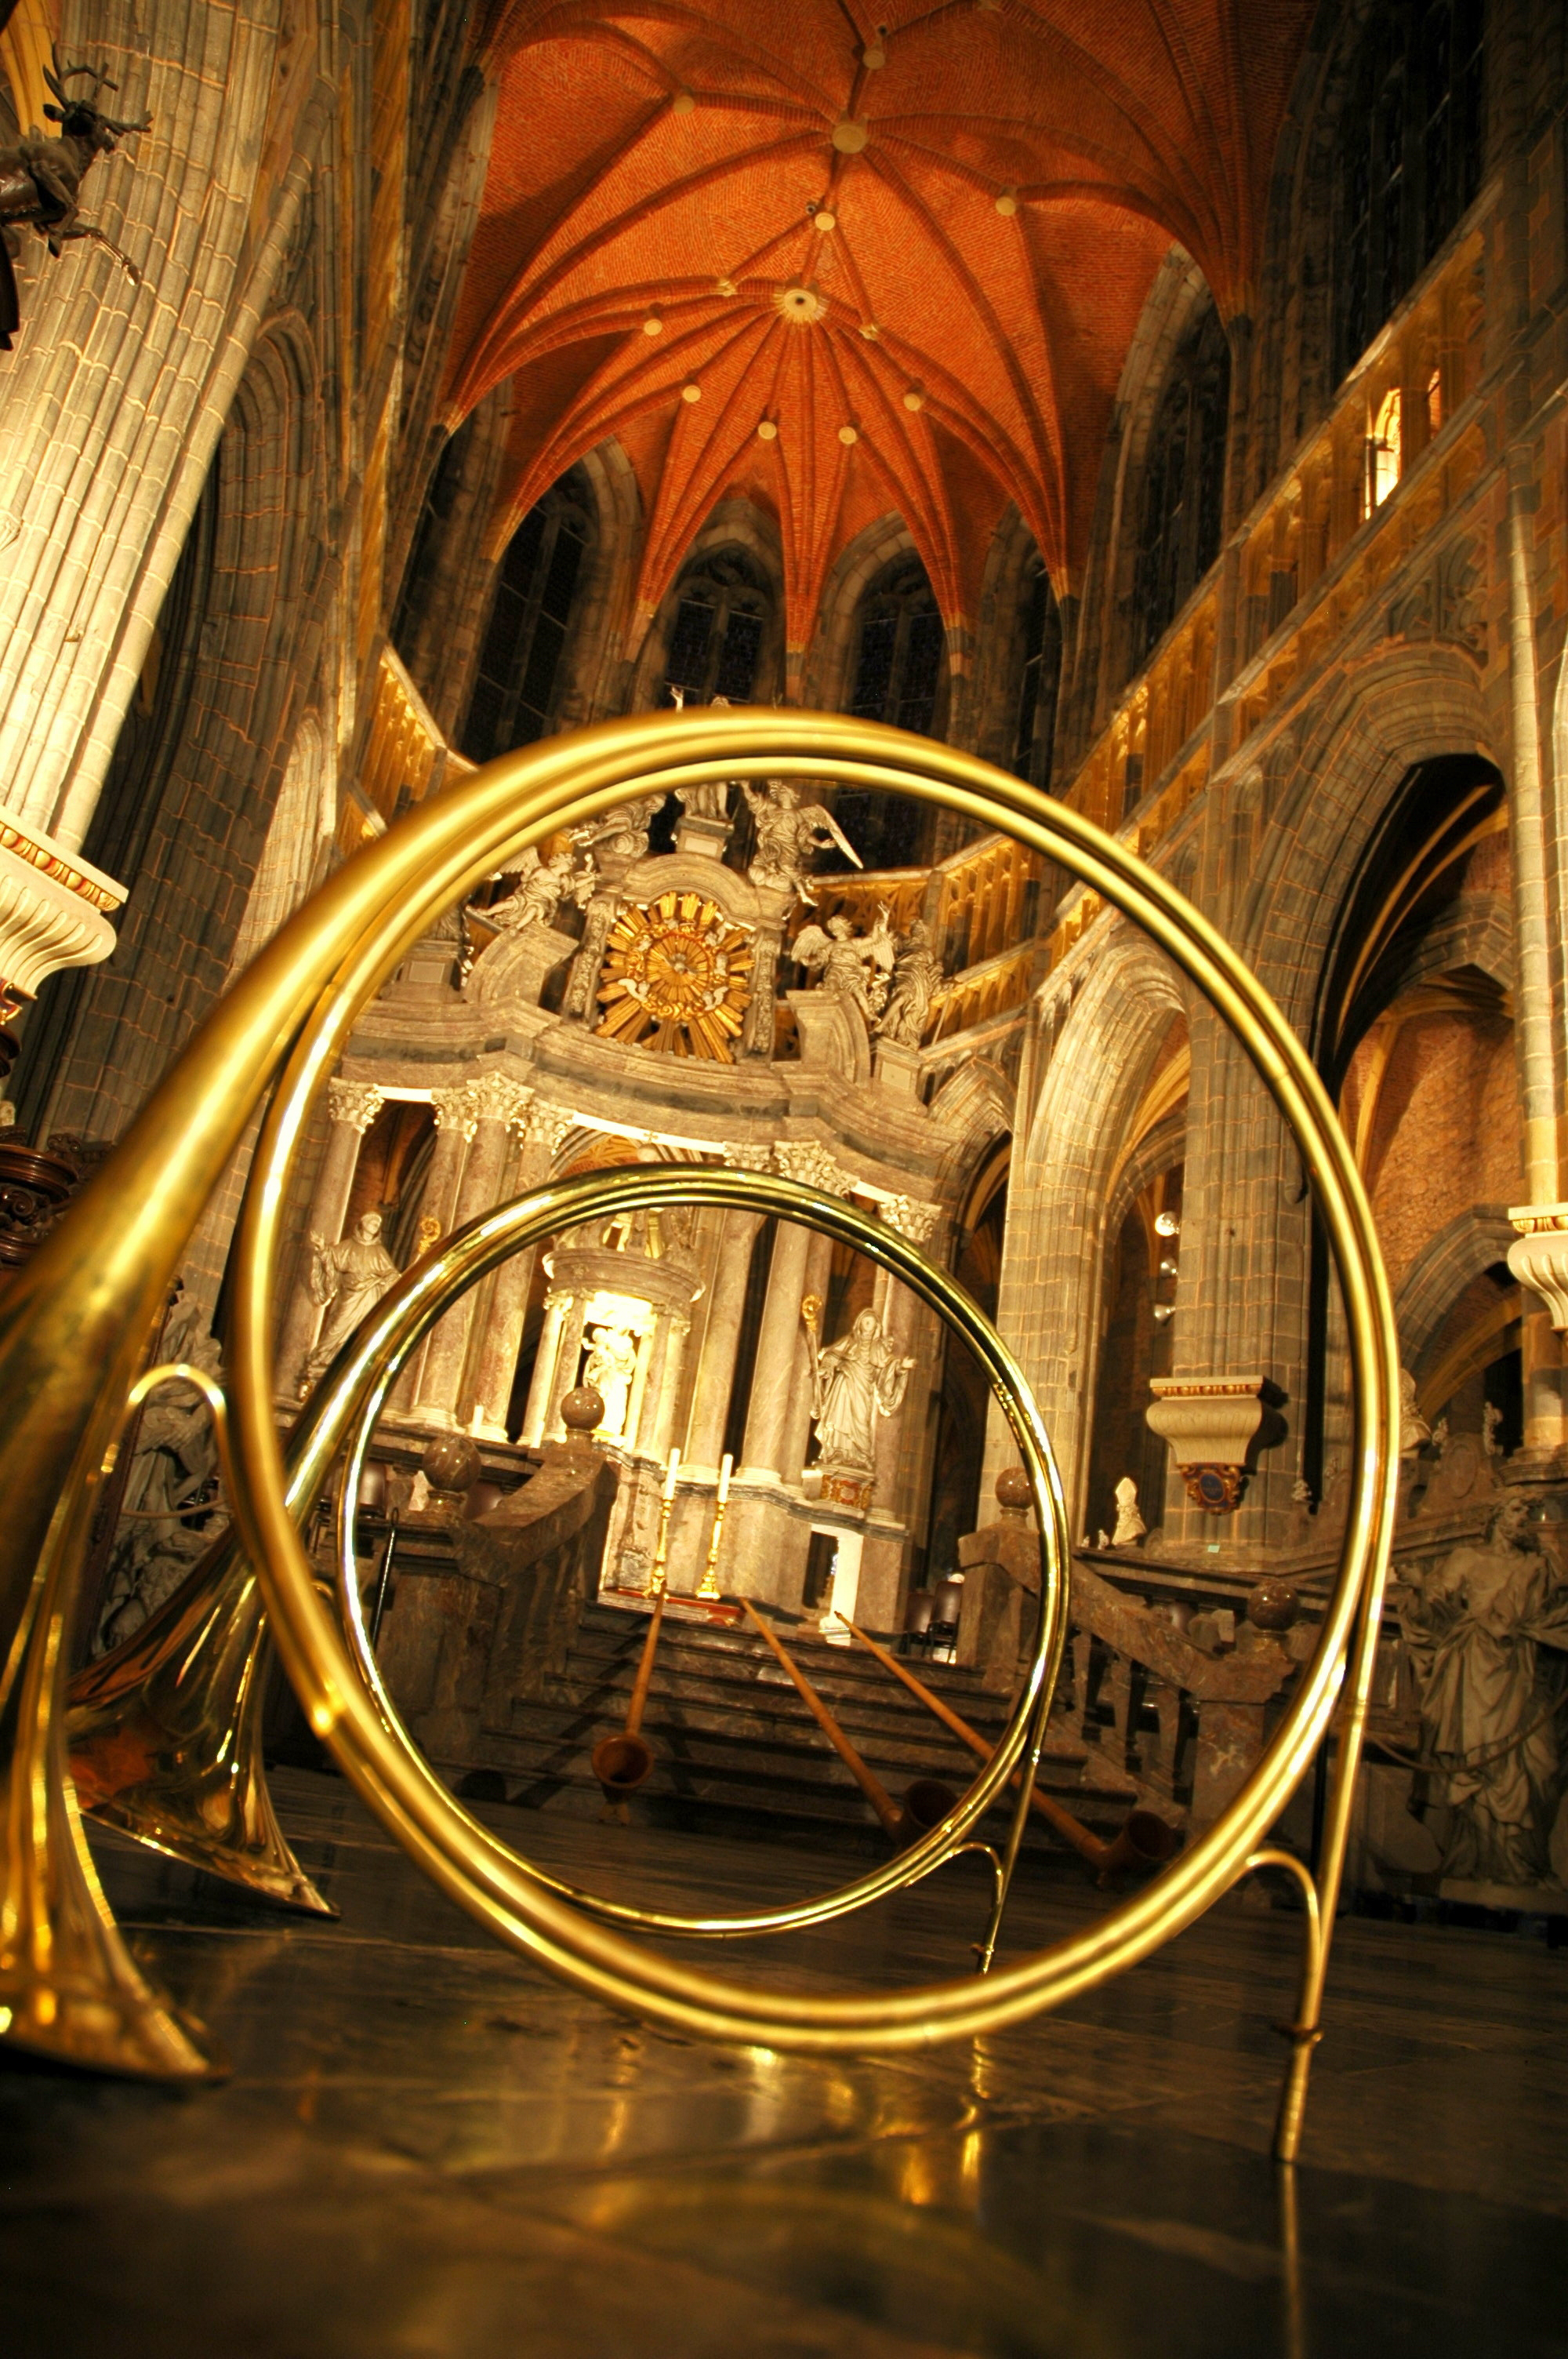 Le cor de chasse and interior of the Saint-Pierre basilica à Saint-Hubert